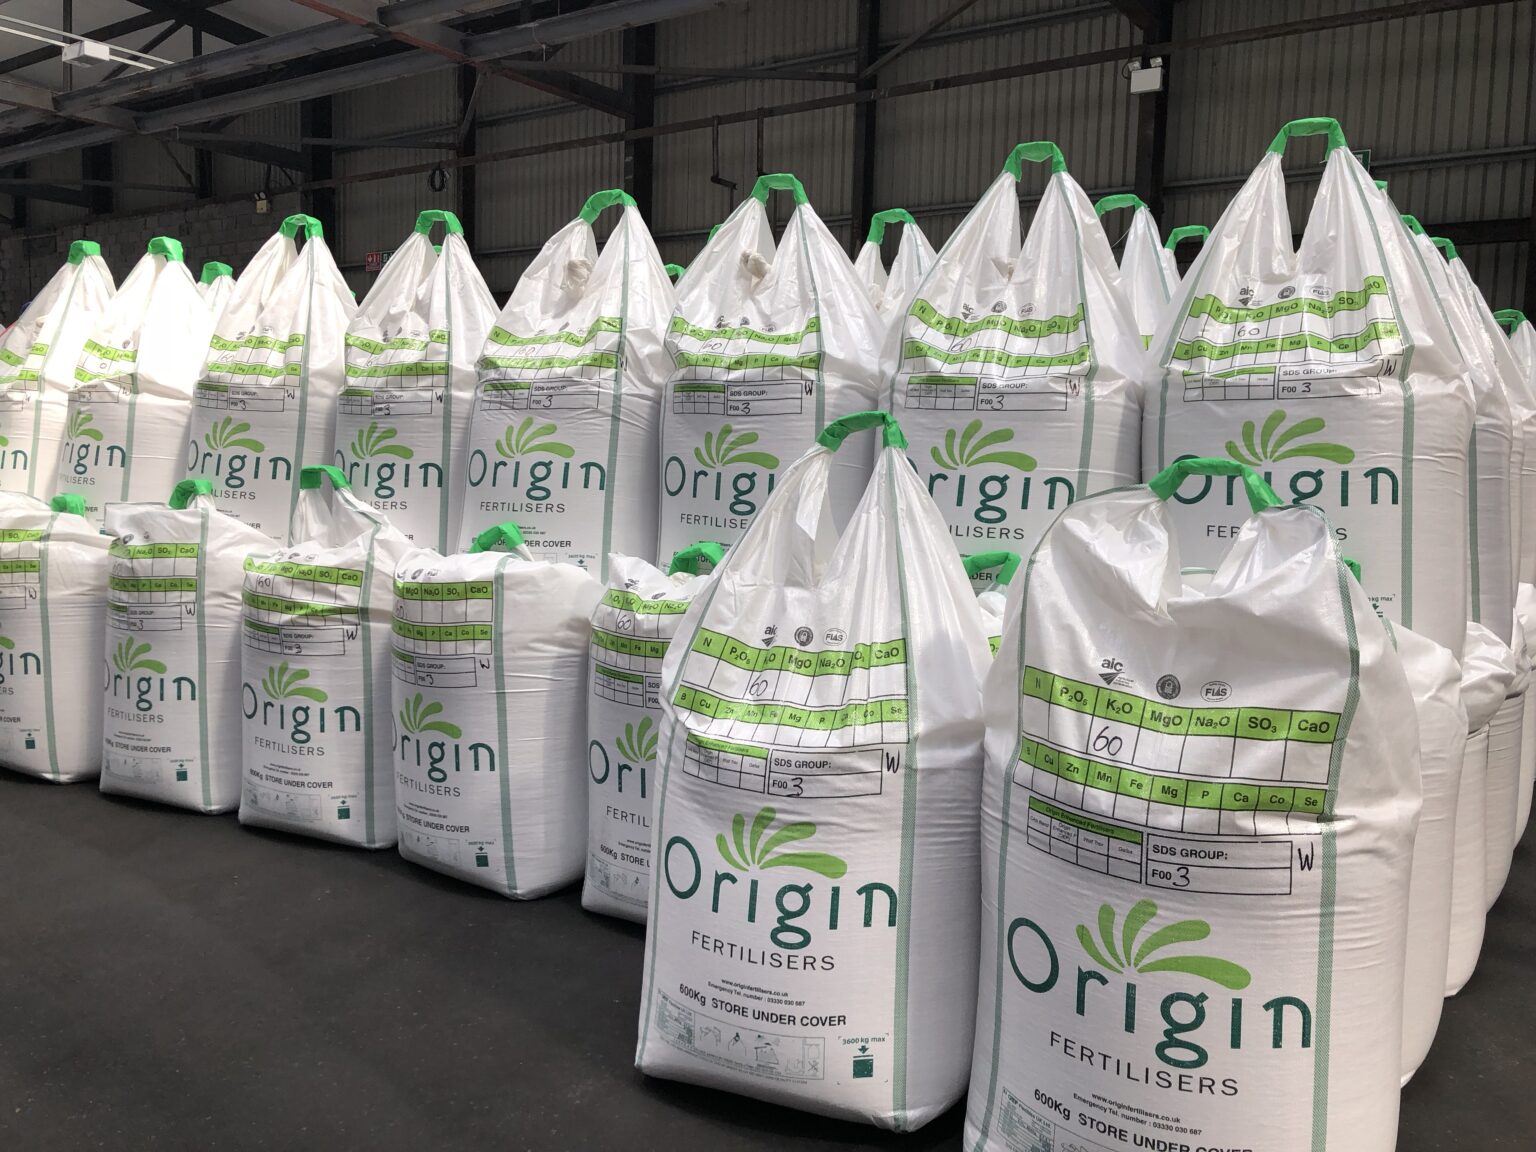 Origin api. Fertiliser Type: e.1. manganese fertiliser solution. Origon us.